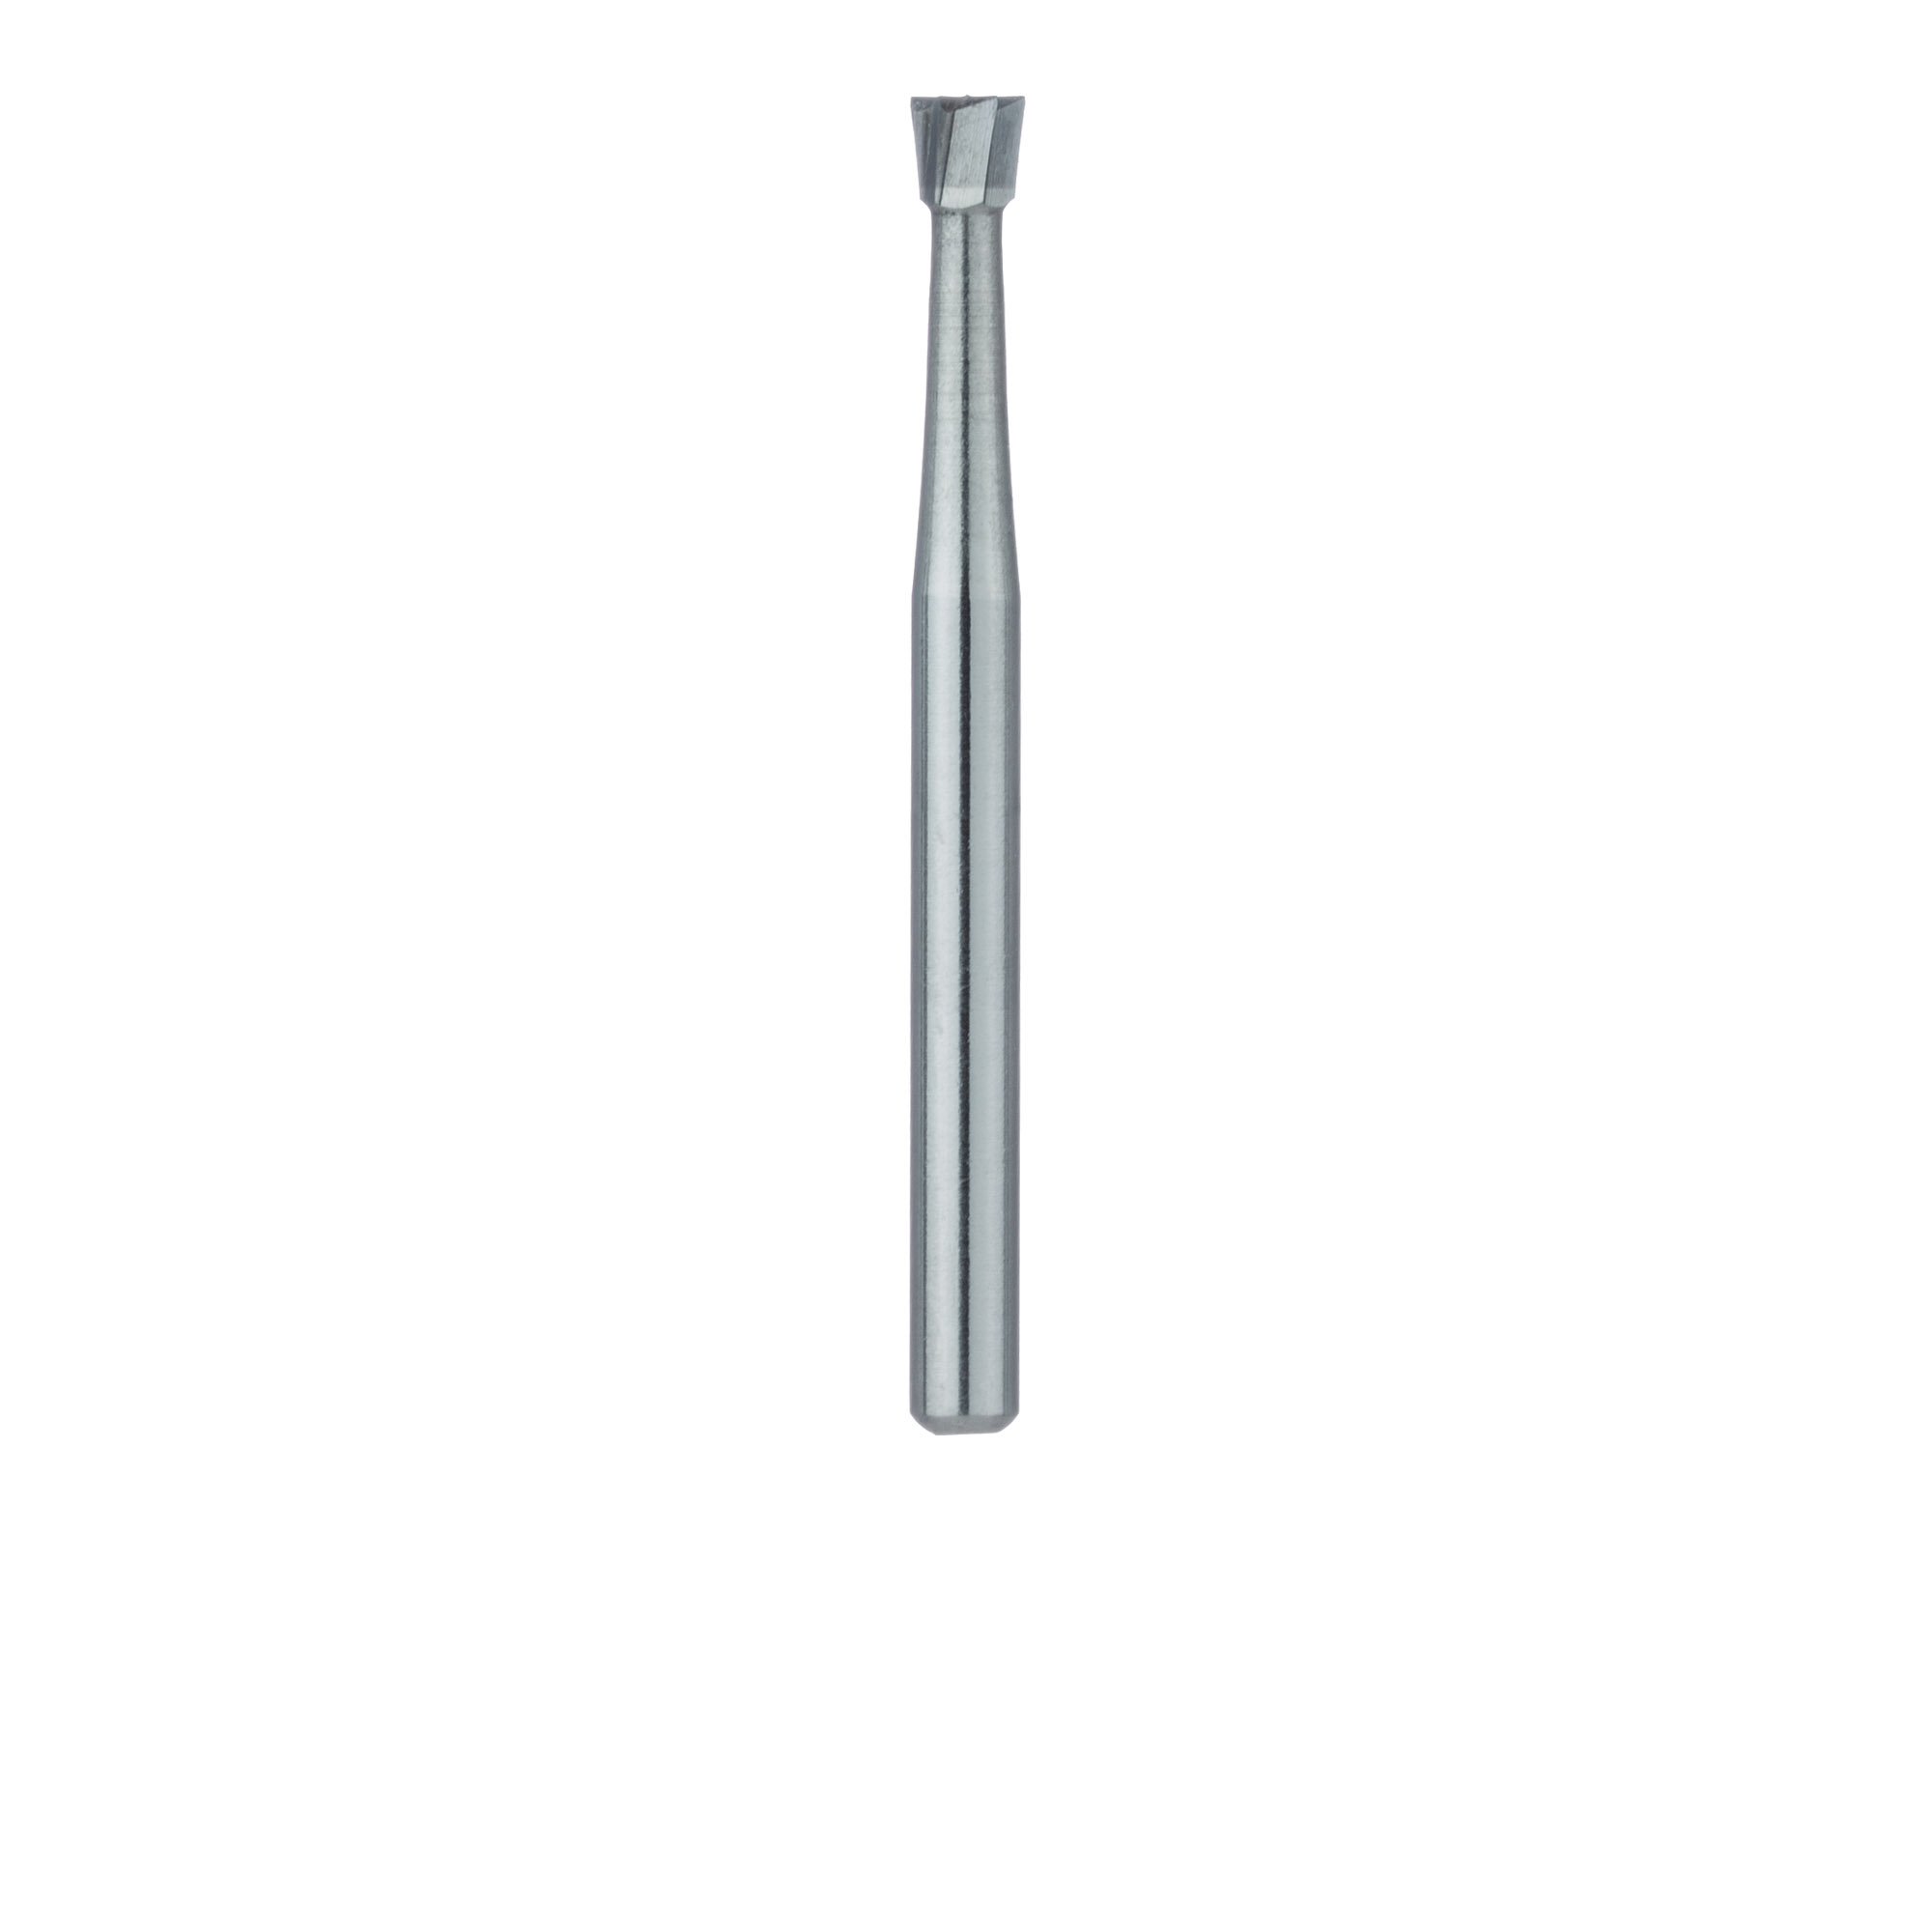 HM2-016-FG Operative Carbide Bur, Inverted Cone, US #38, 1.6mm Ø, FG